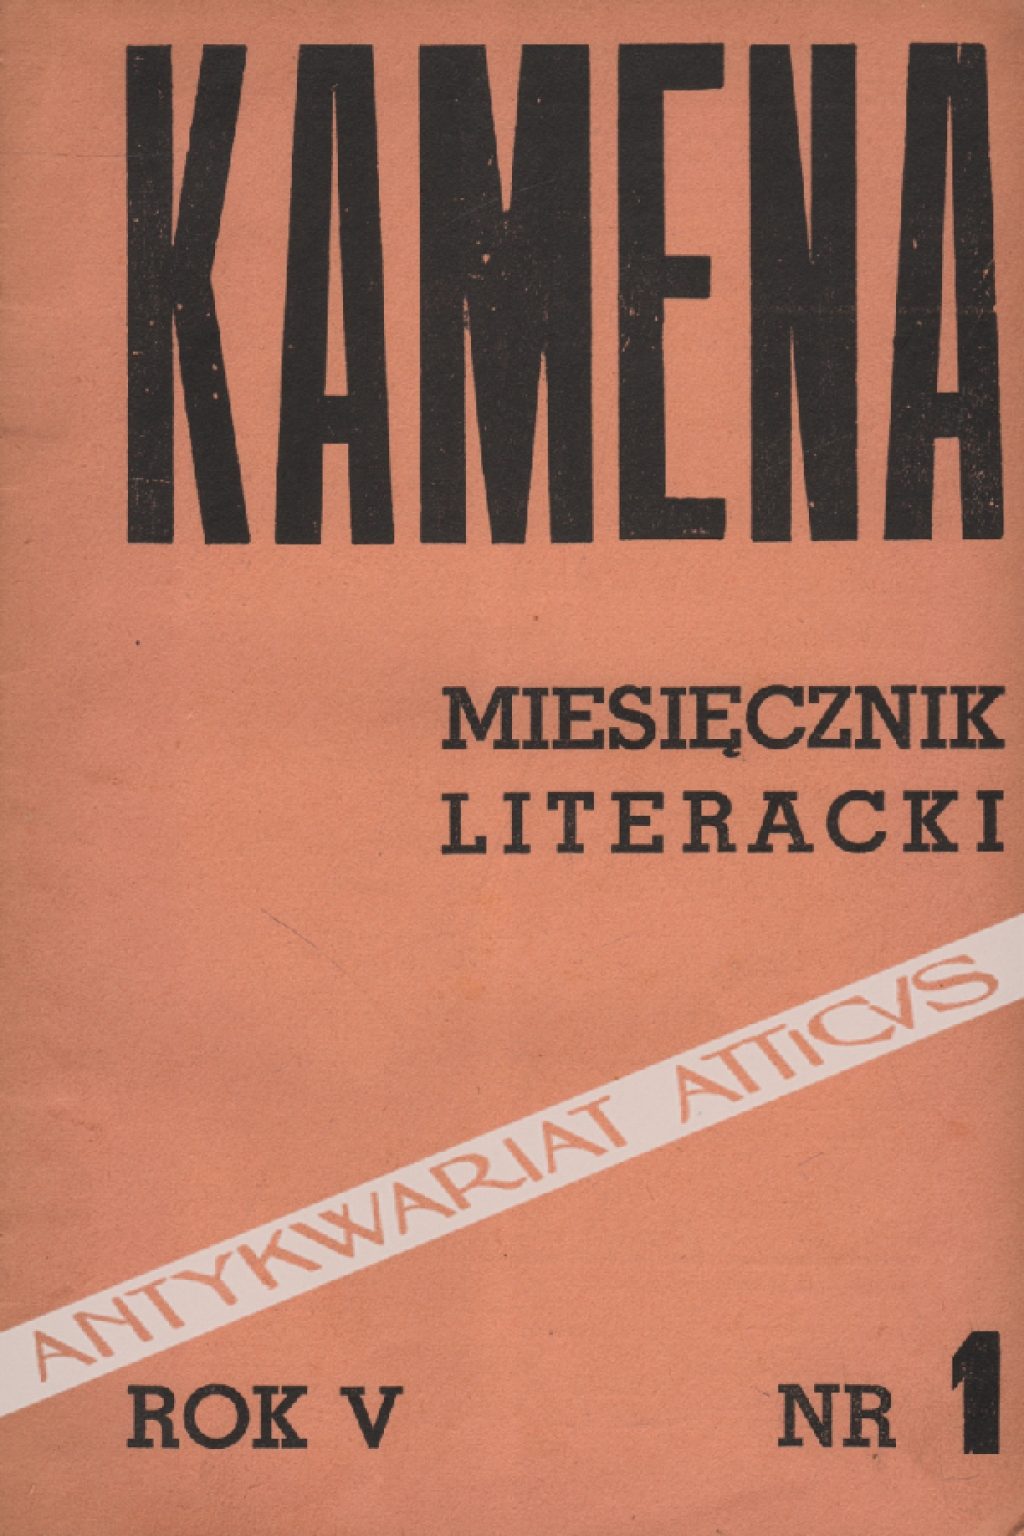 Kamena. Miesięcznik literacki. Rok V, nr 1-10 (41-50), wrzesień 1937 - czerwiec 1938 [współoprawne]